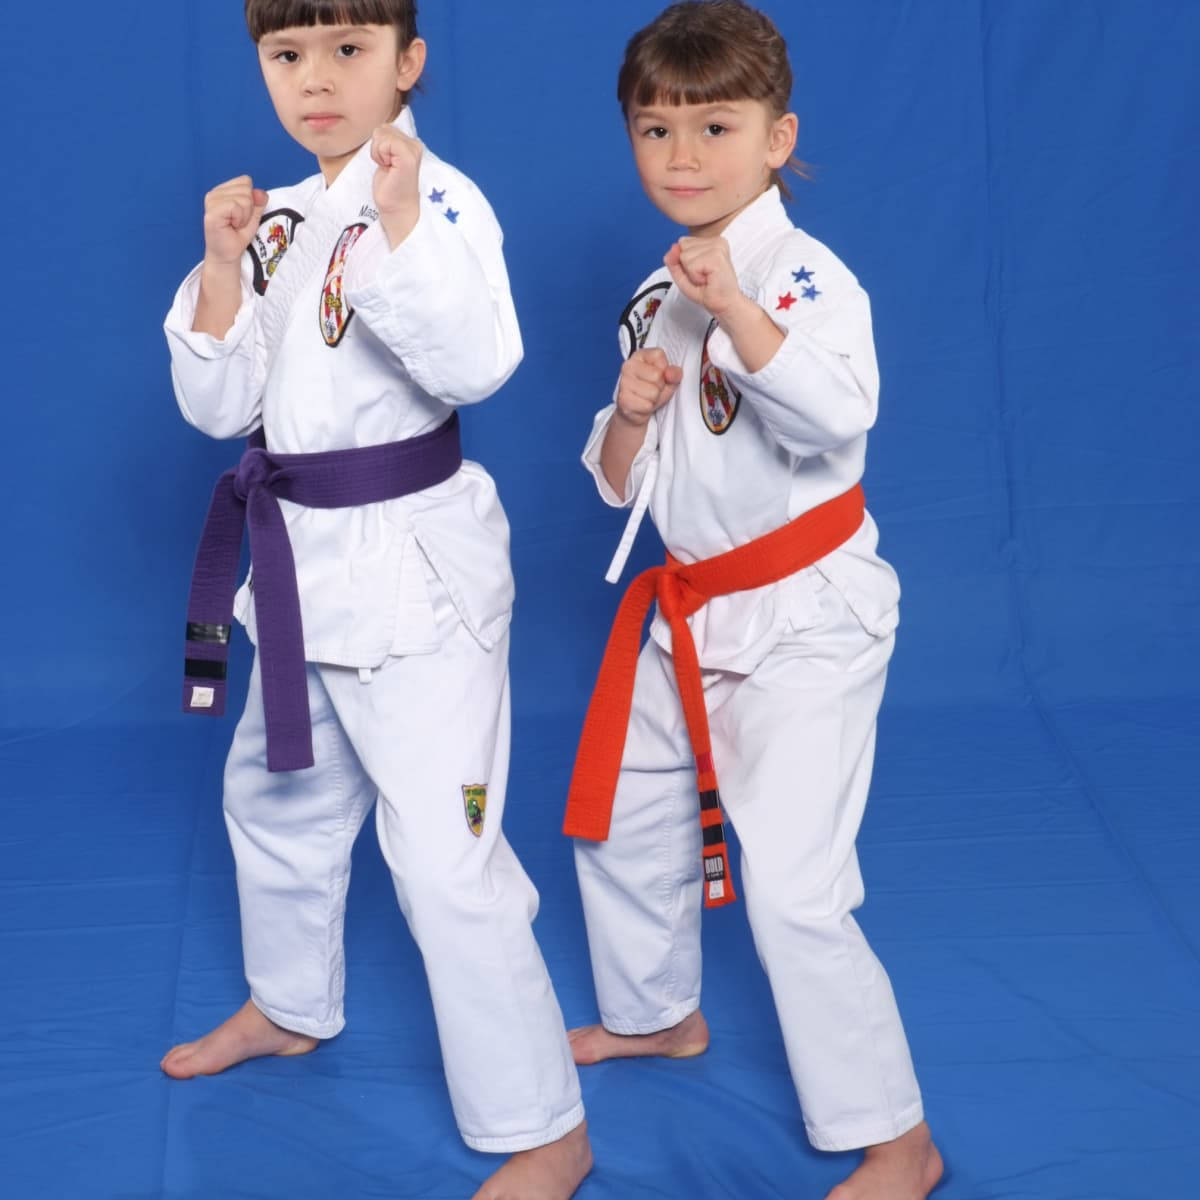 Karate Two Kids Posing Wallpaper